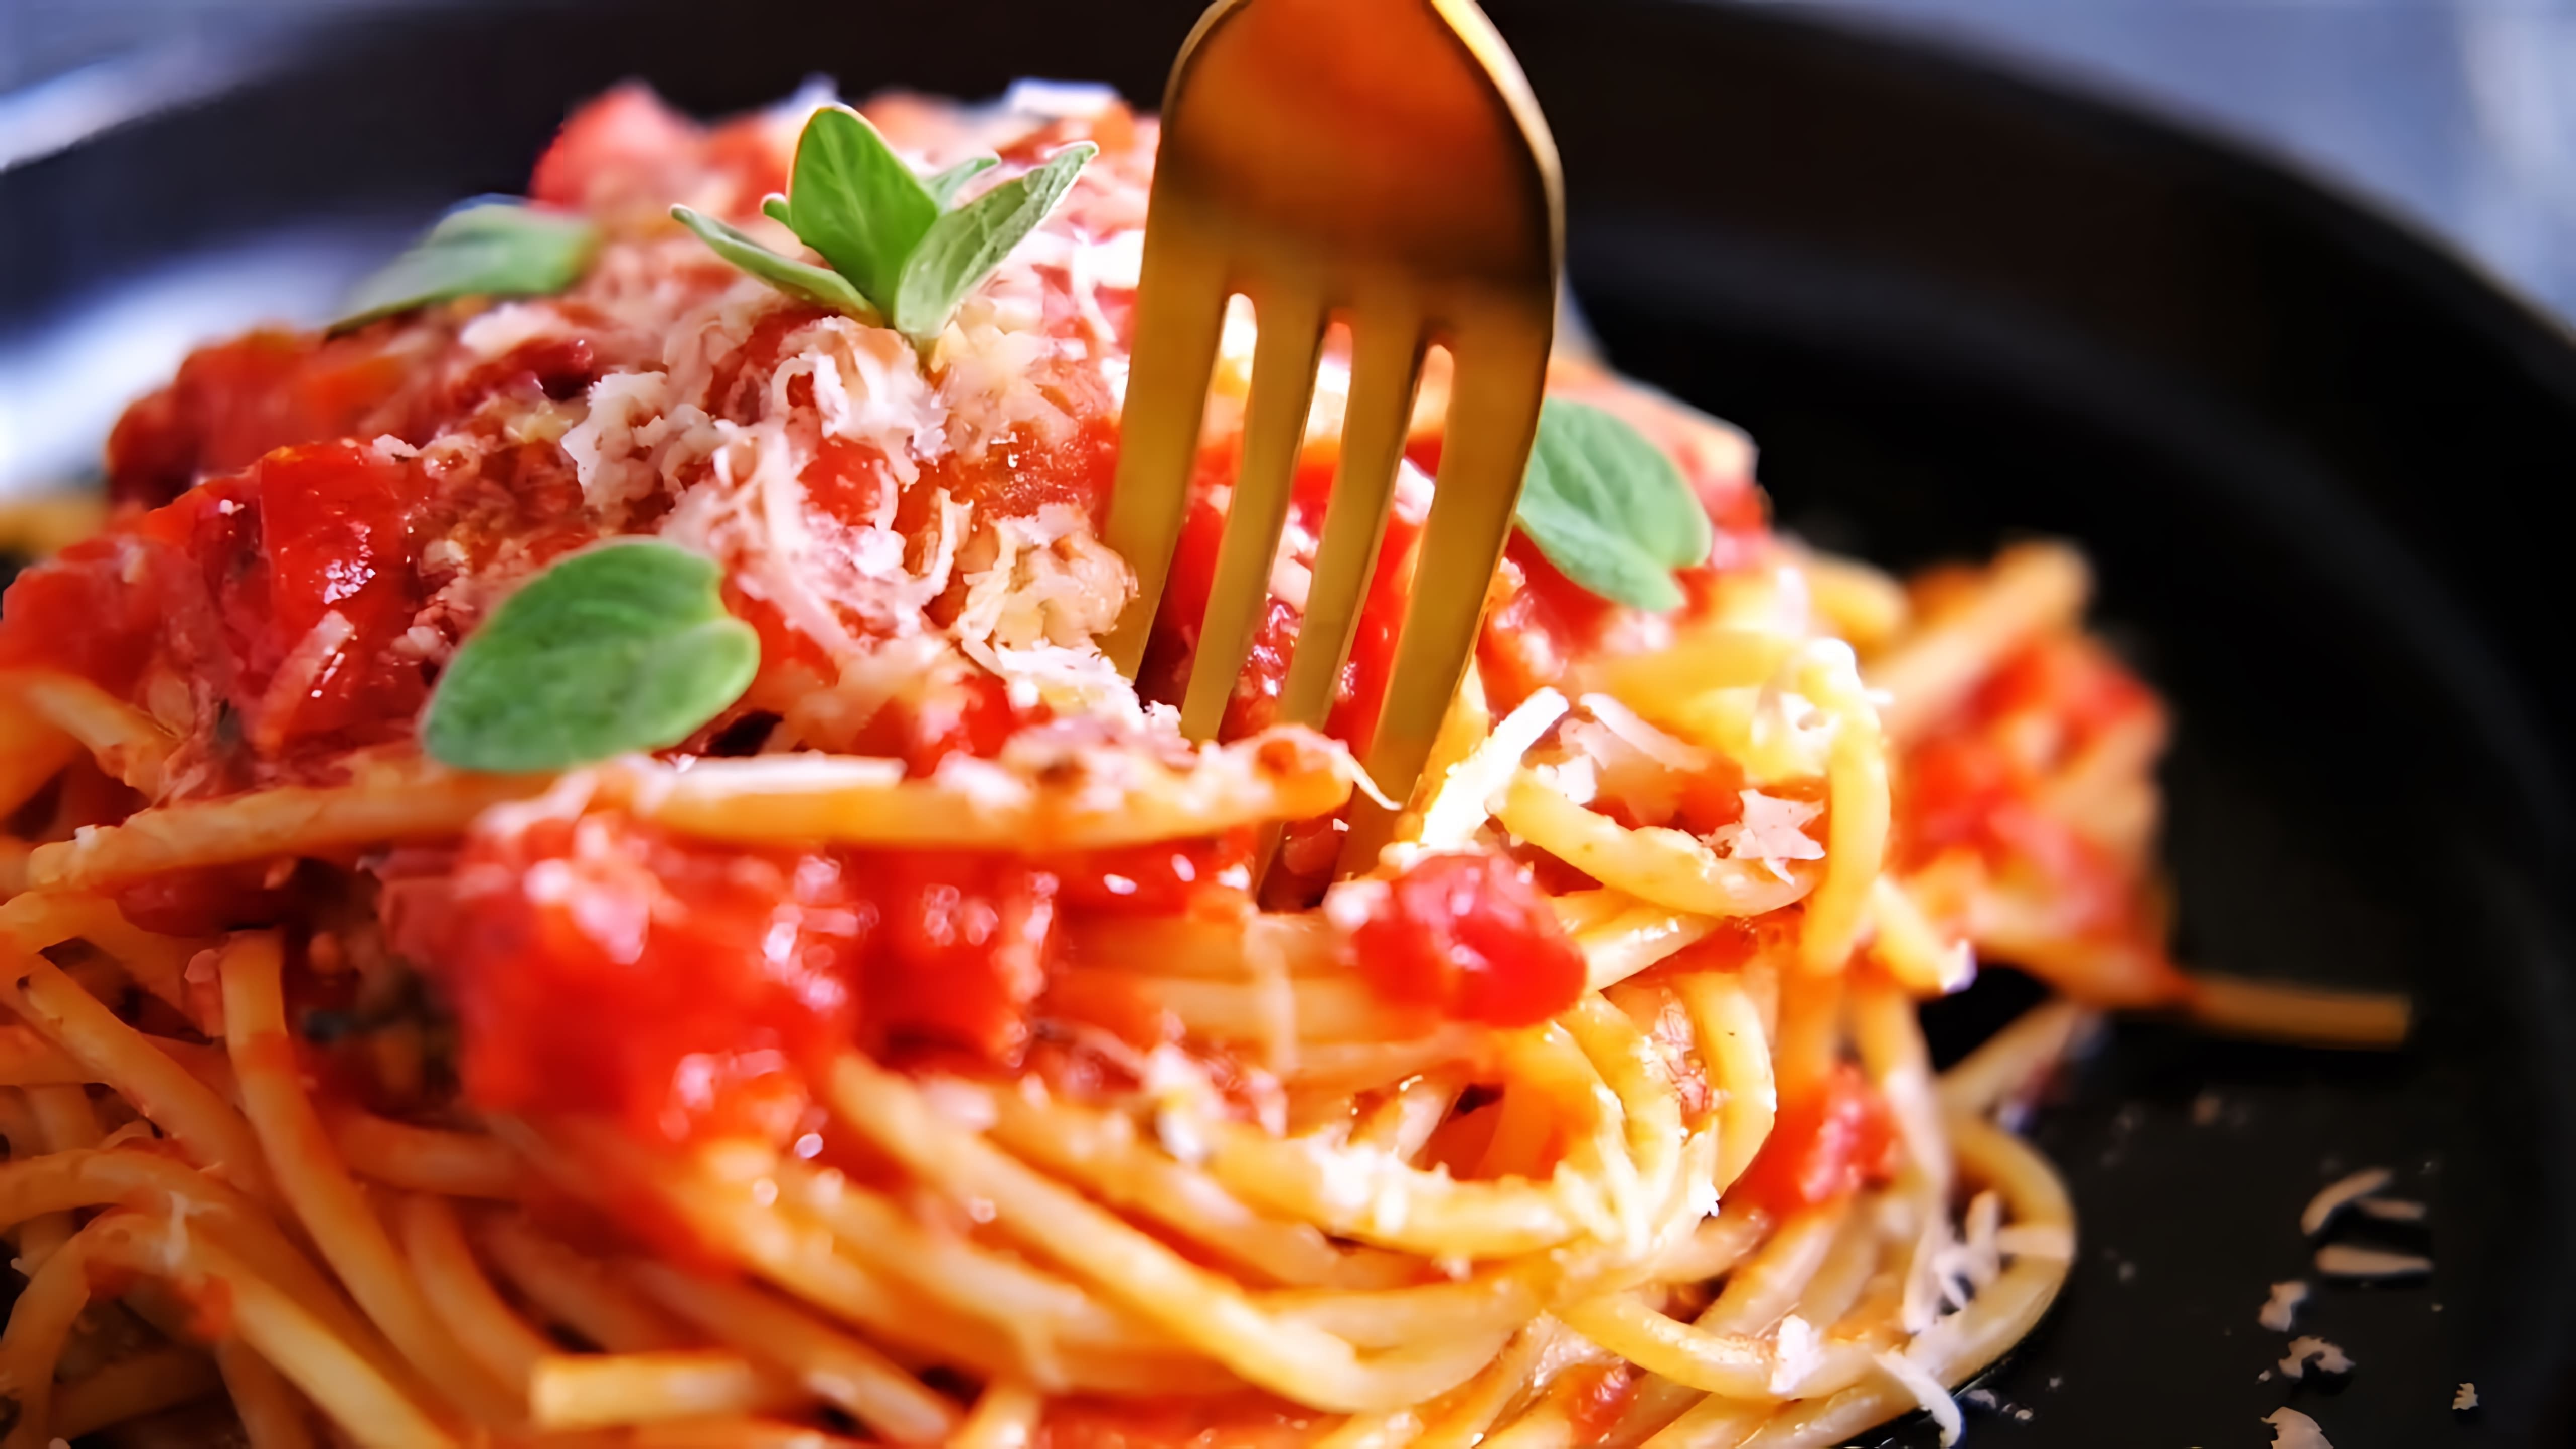 В этом видео демонстрируется рецепт приготовления настоящей итальянской пасты с томатным соусом